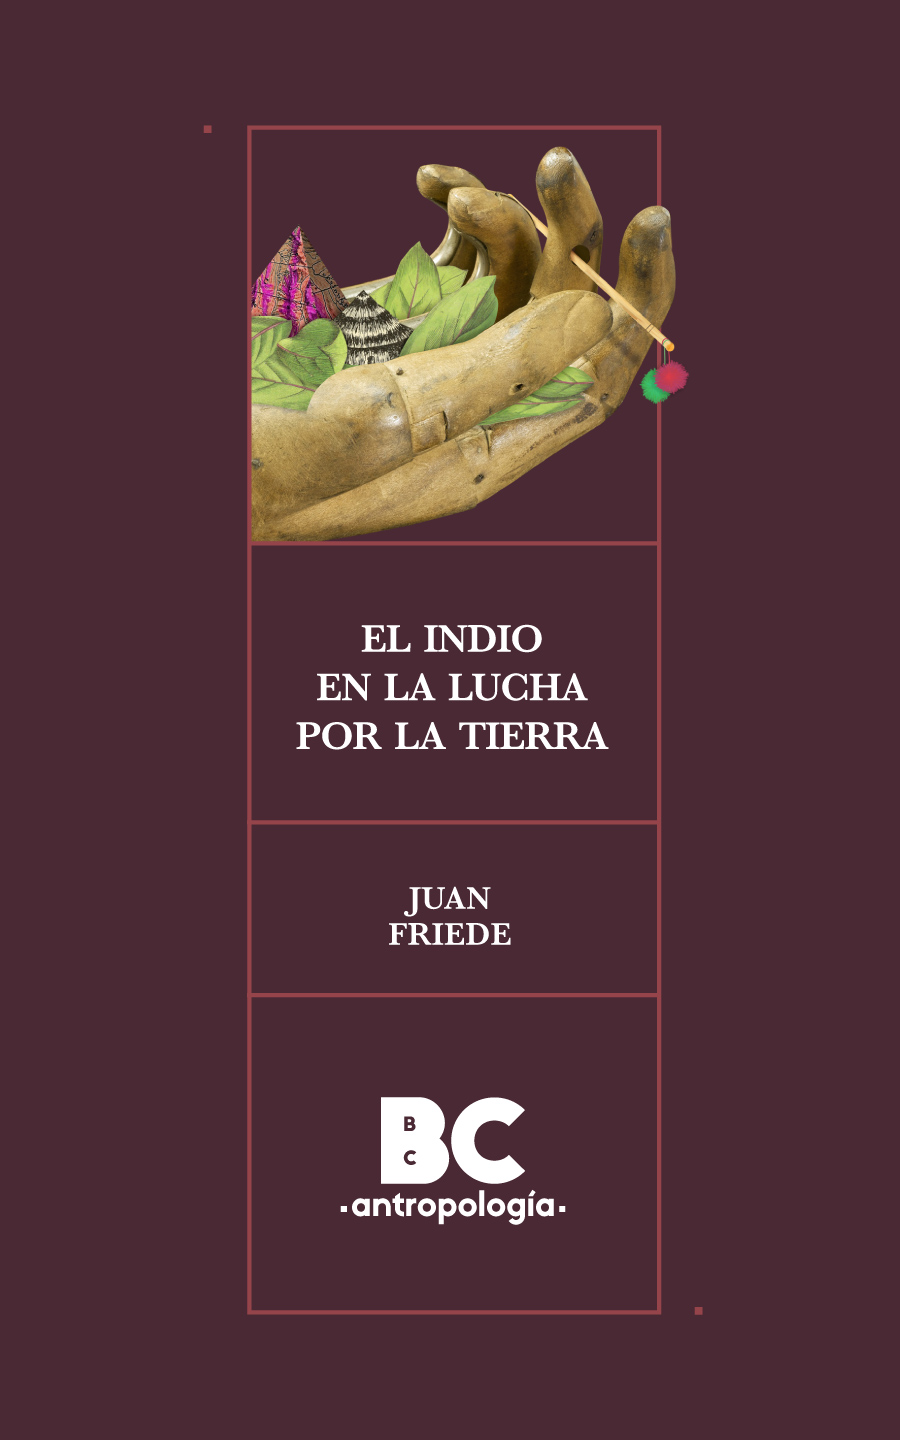 Catalogación en la publicación Biblioteca Nacional de Colombia Friede Juan - photo 1